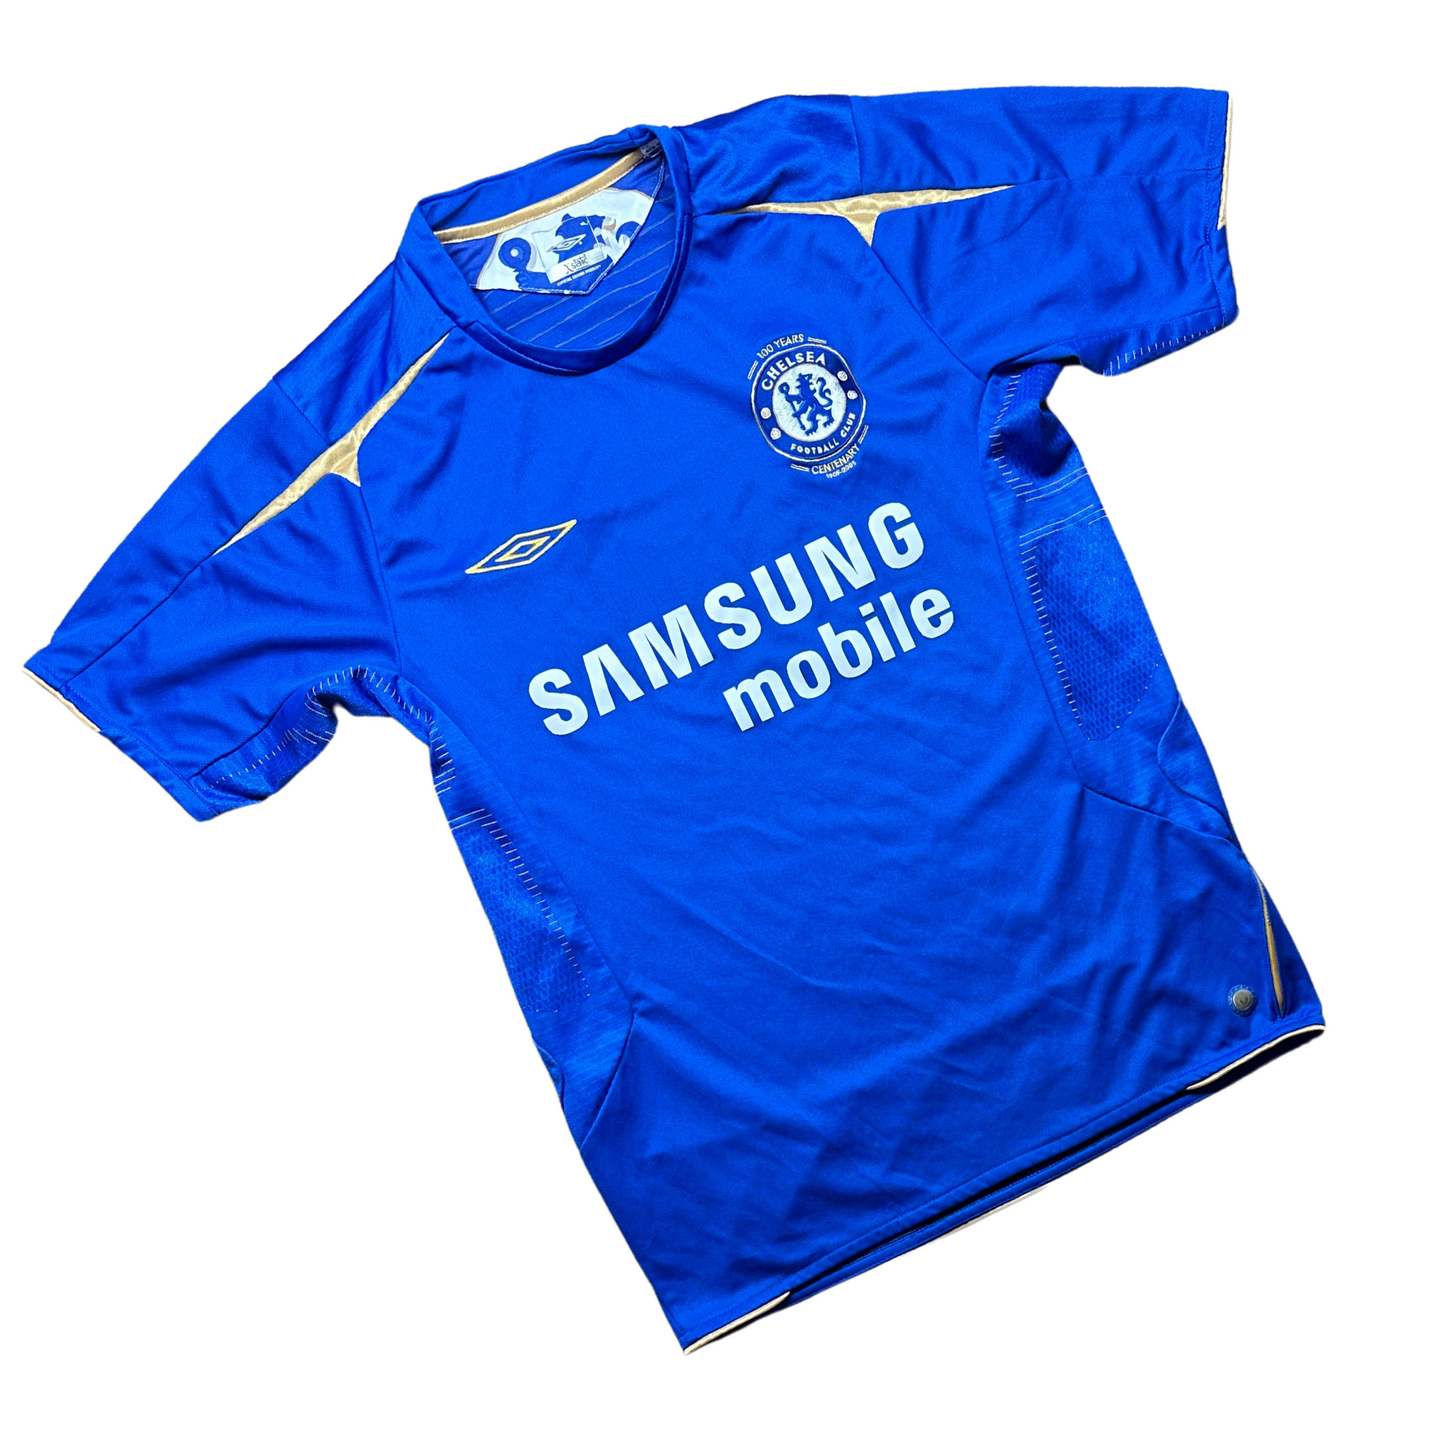 Chelsea 2005/2006 Home Football Shirt